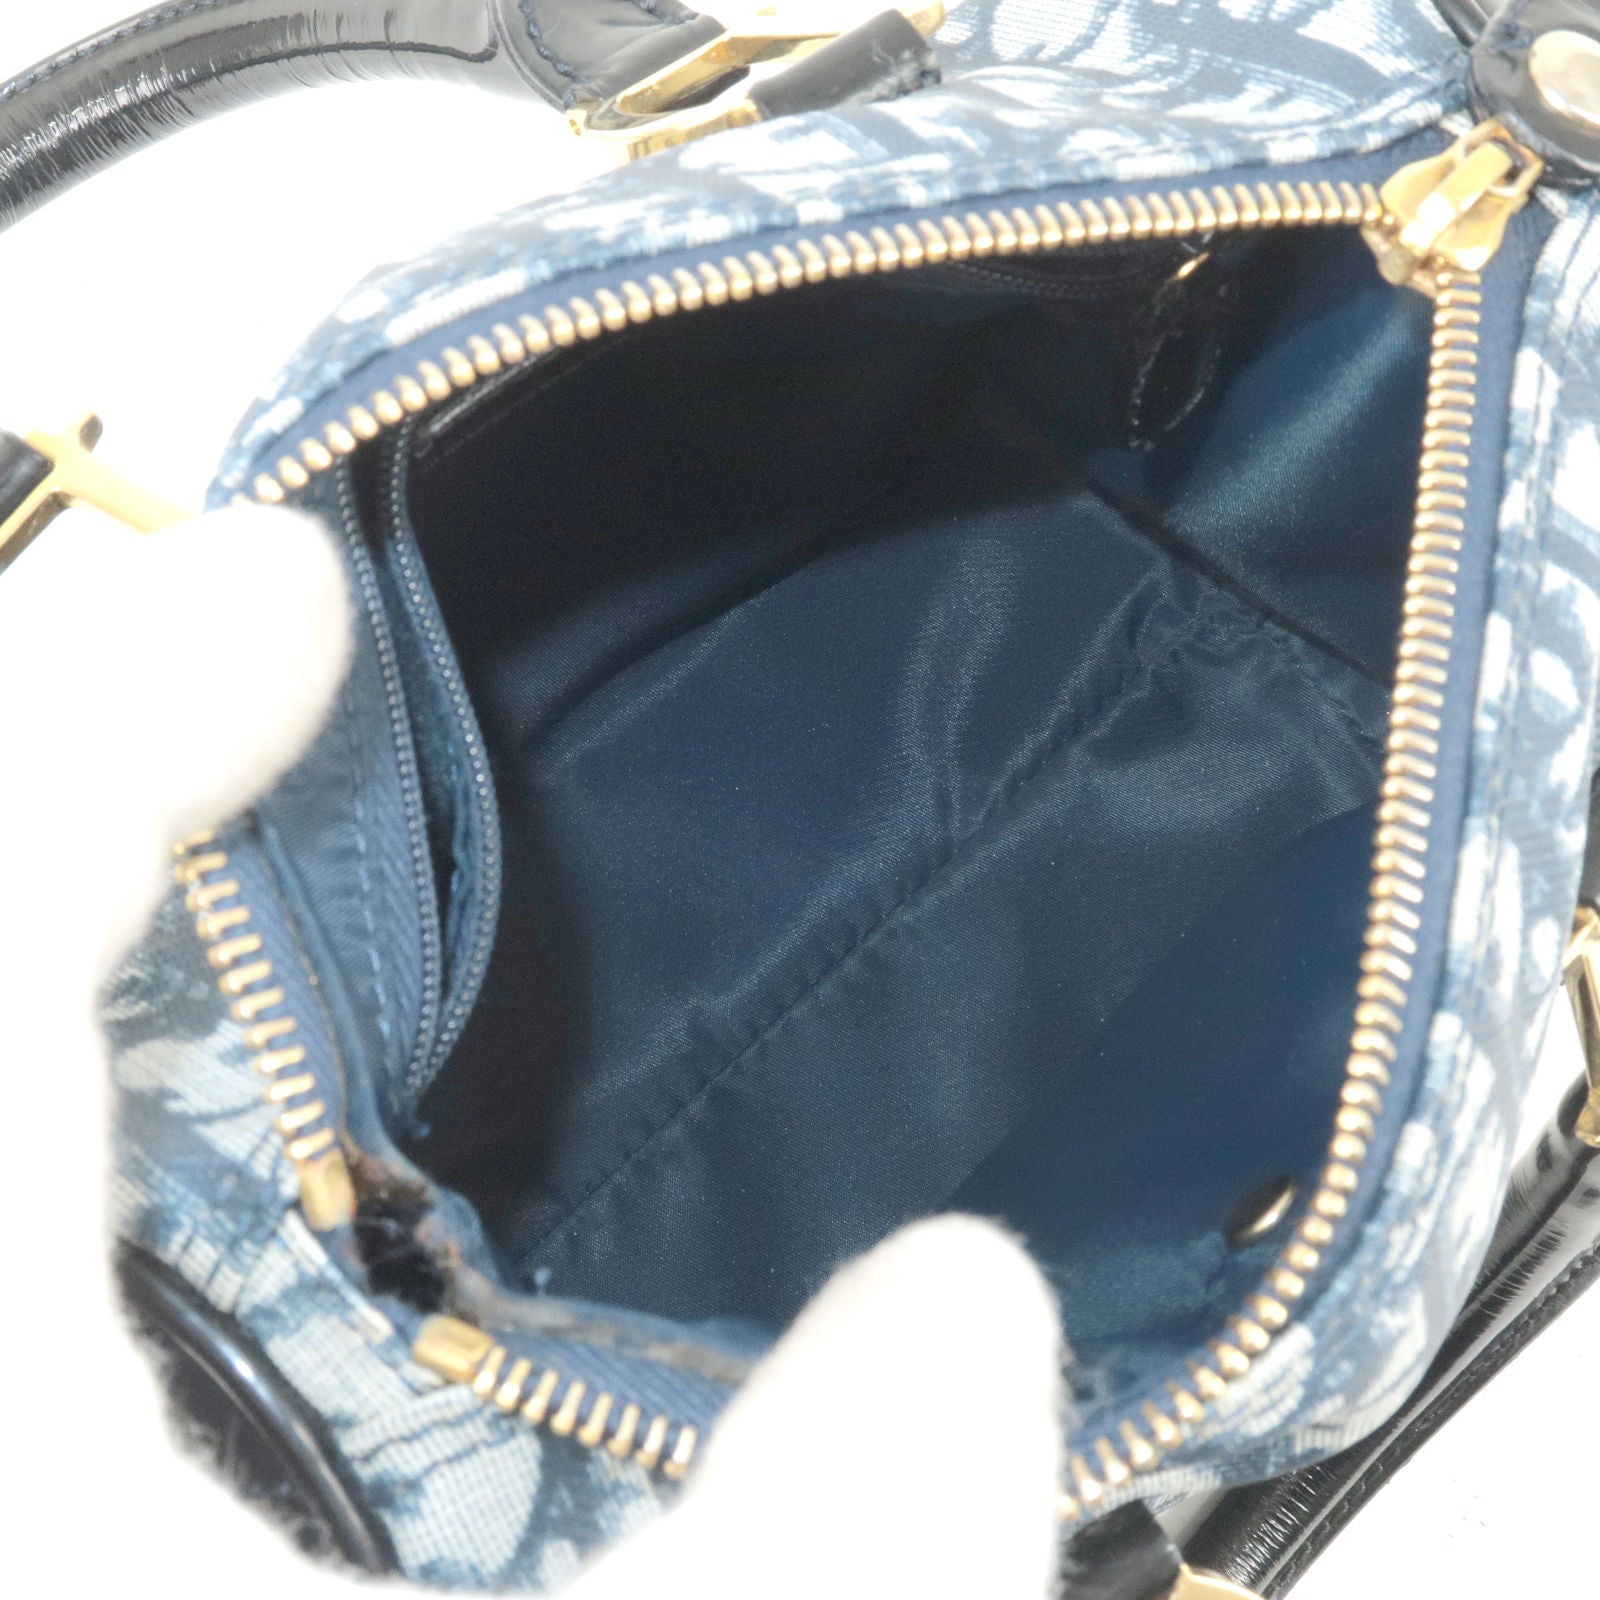 Christian Dior Trotter Handbag Mini Boston Bag Bordeaux Nylon PVC